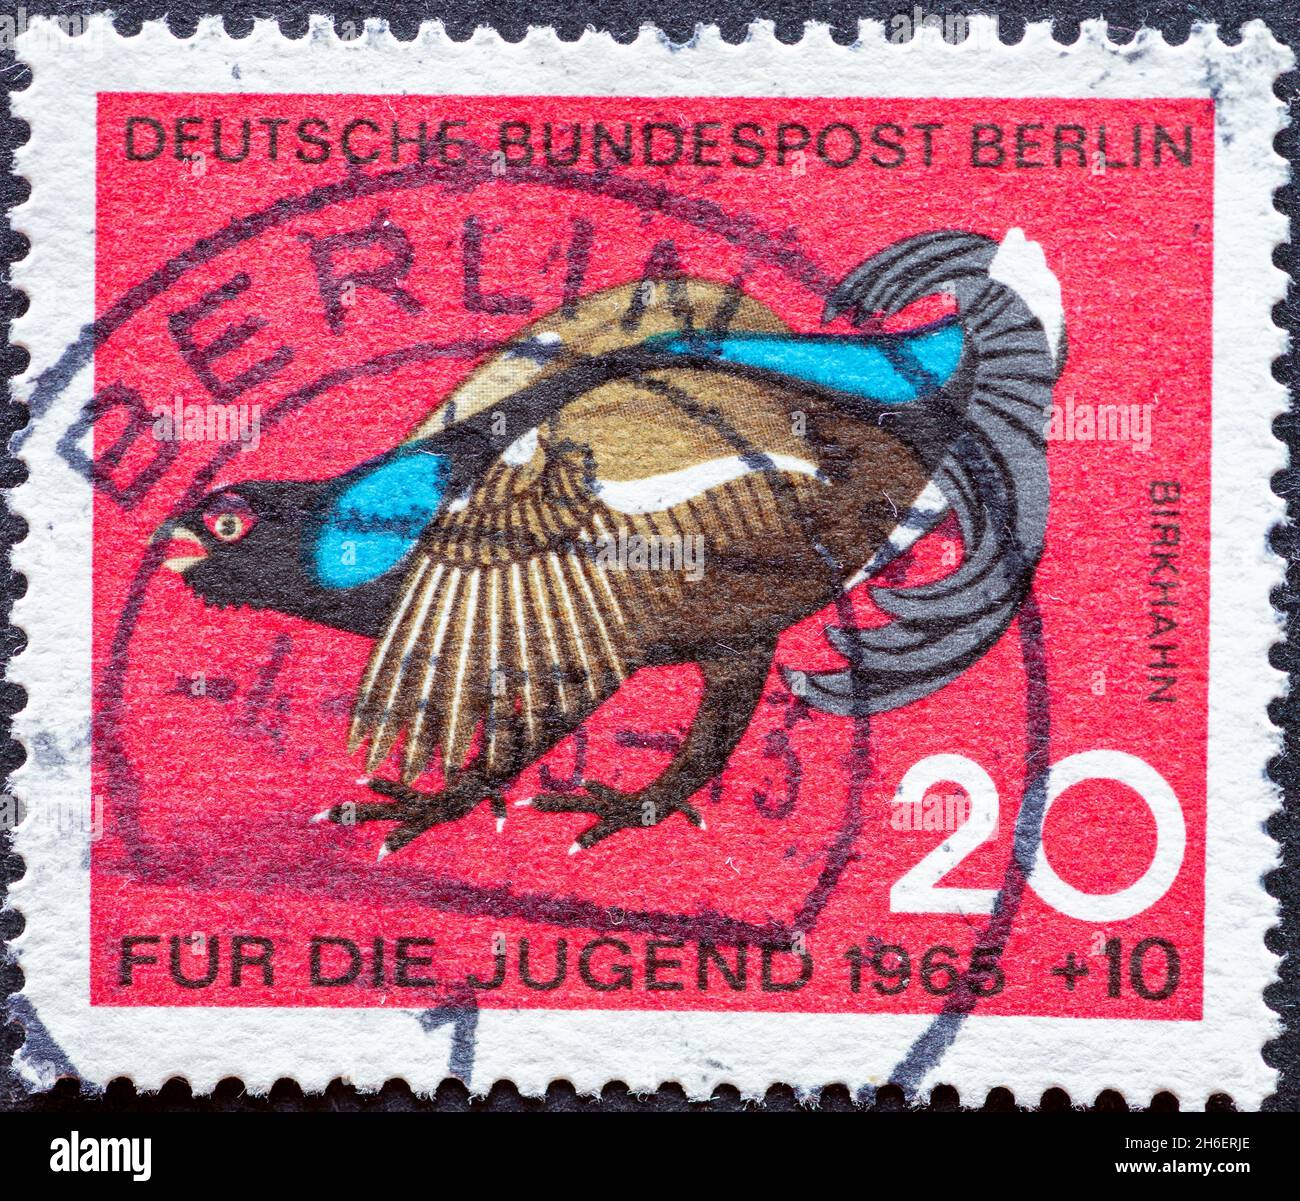 ALLEMAGNE, Berlin - VERS 1965: Timbre-poste de l'Allemagne, Berlin montrant des oiseaux sauvages spéciaux: Changite de charité timbre postal pour les jeunes Banque D'Images